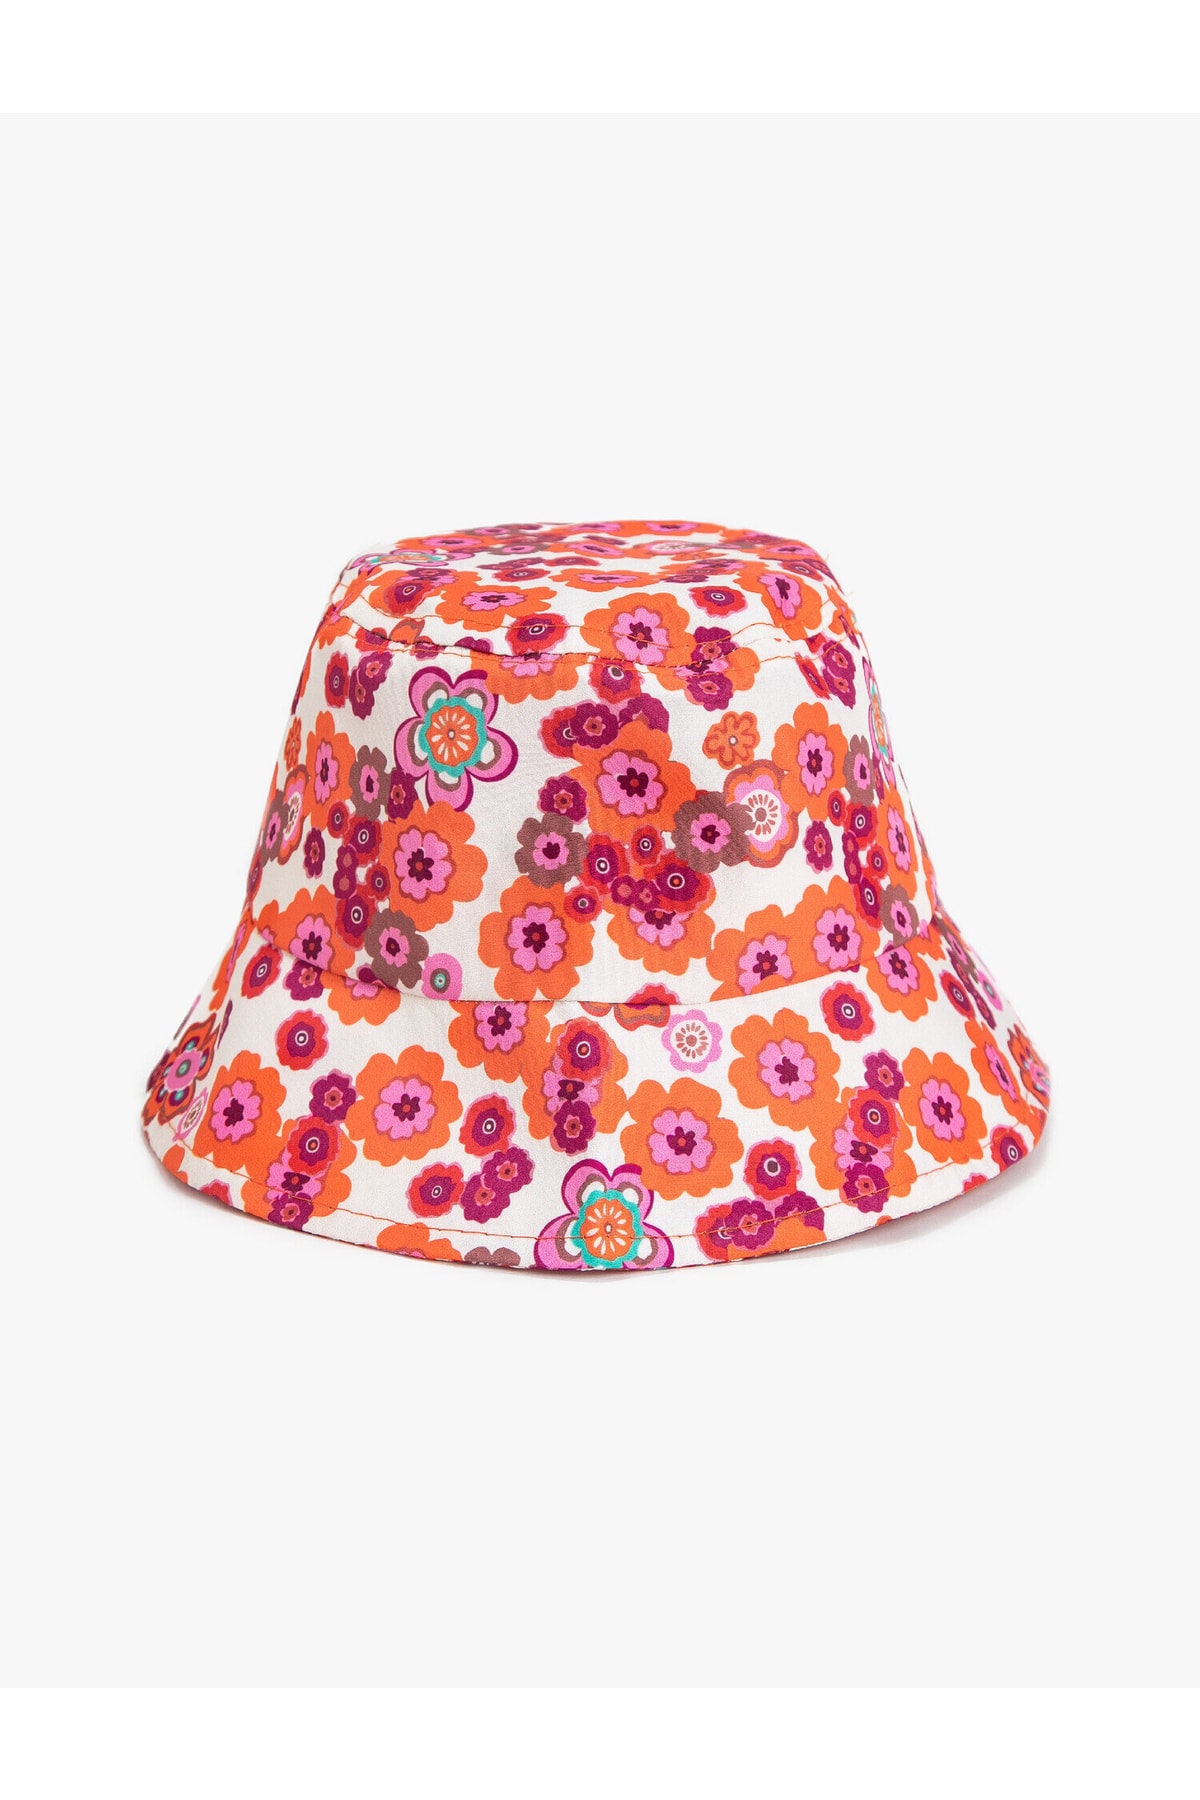 Koton Floral Patterned Bucket Hat